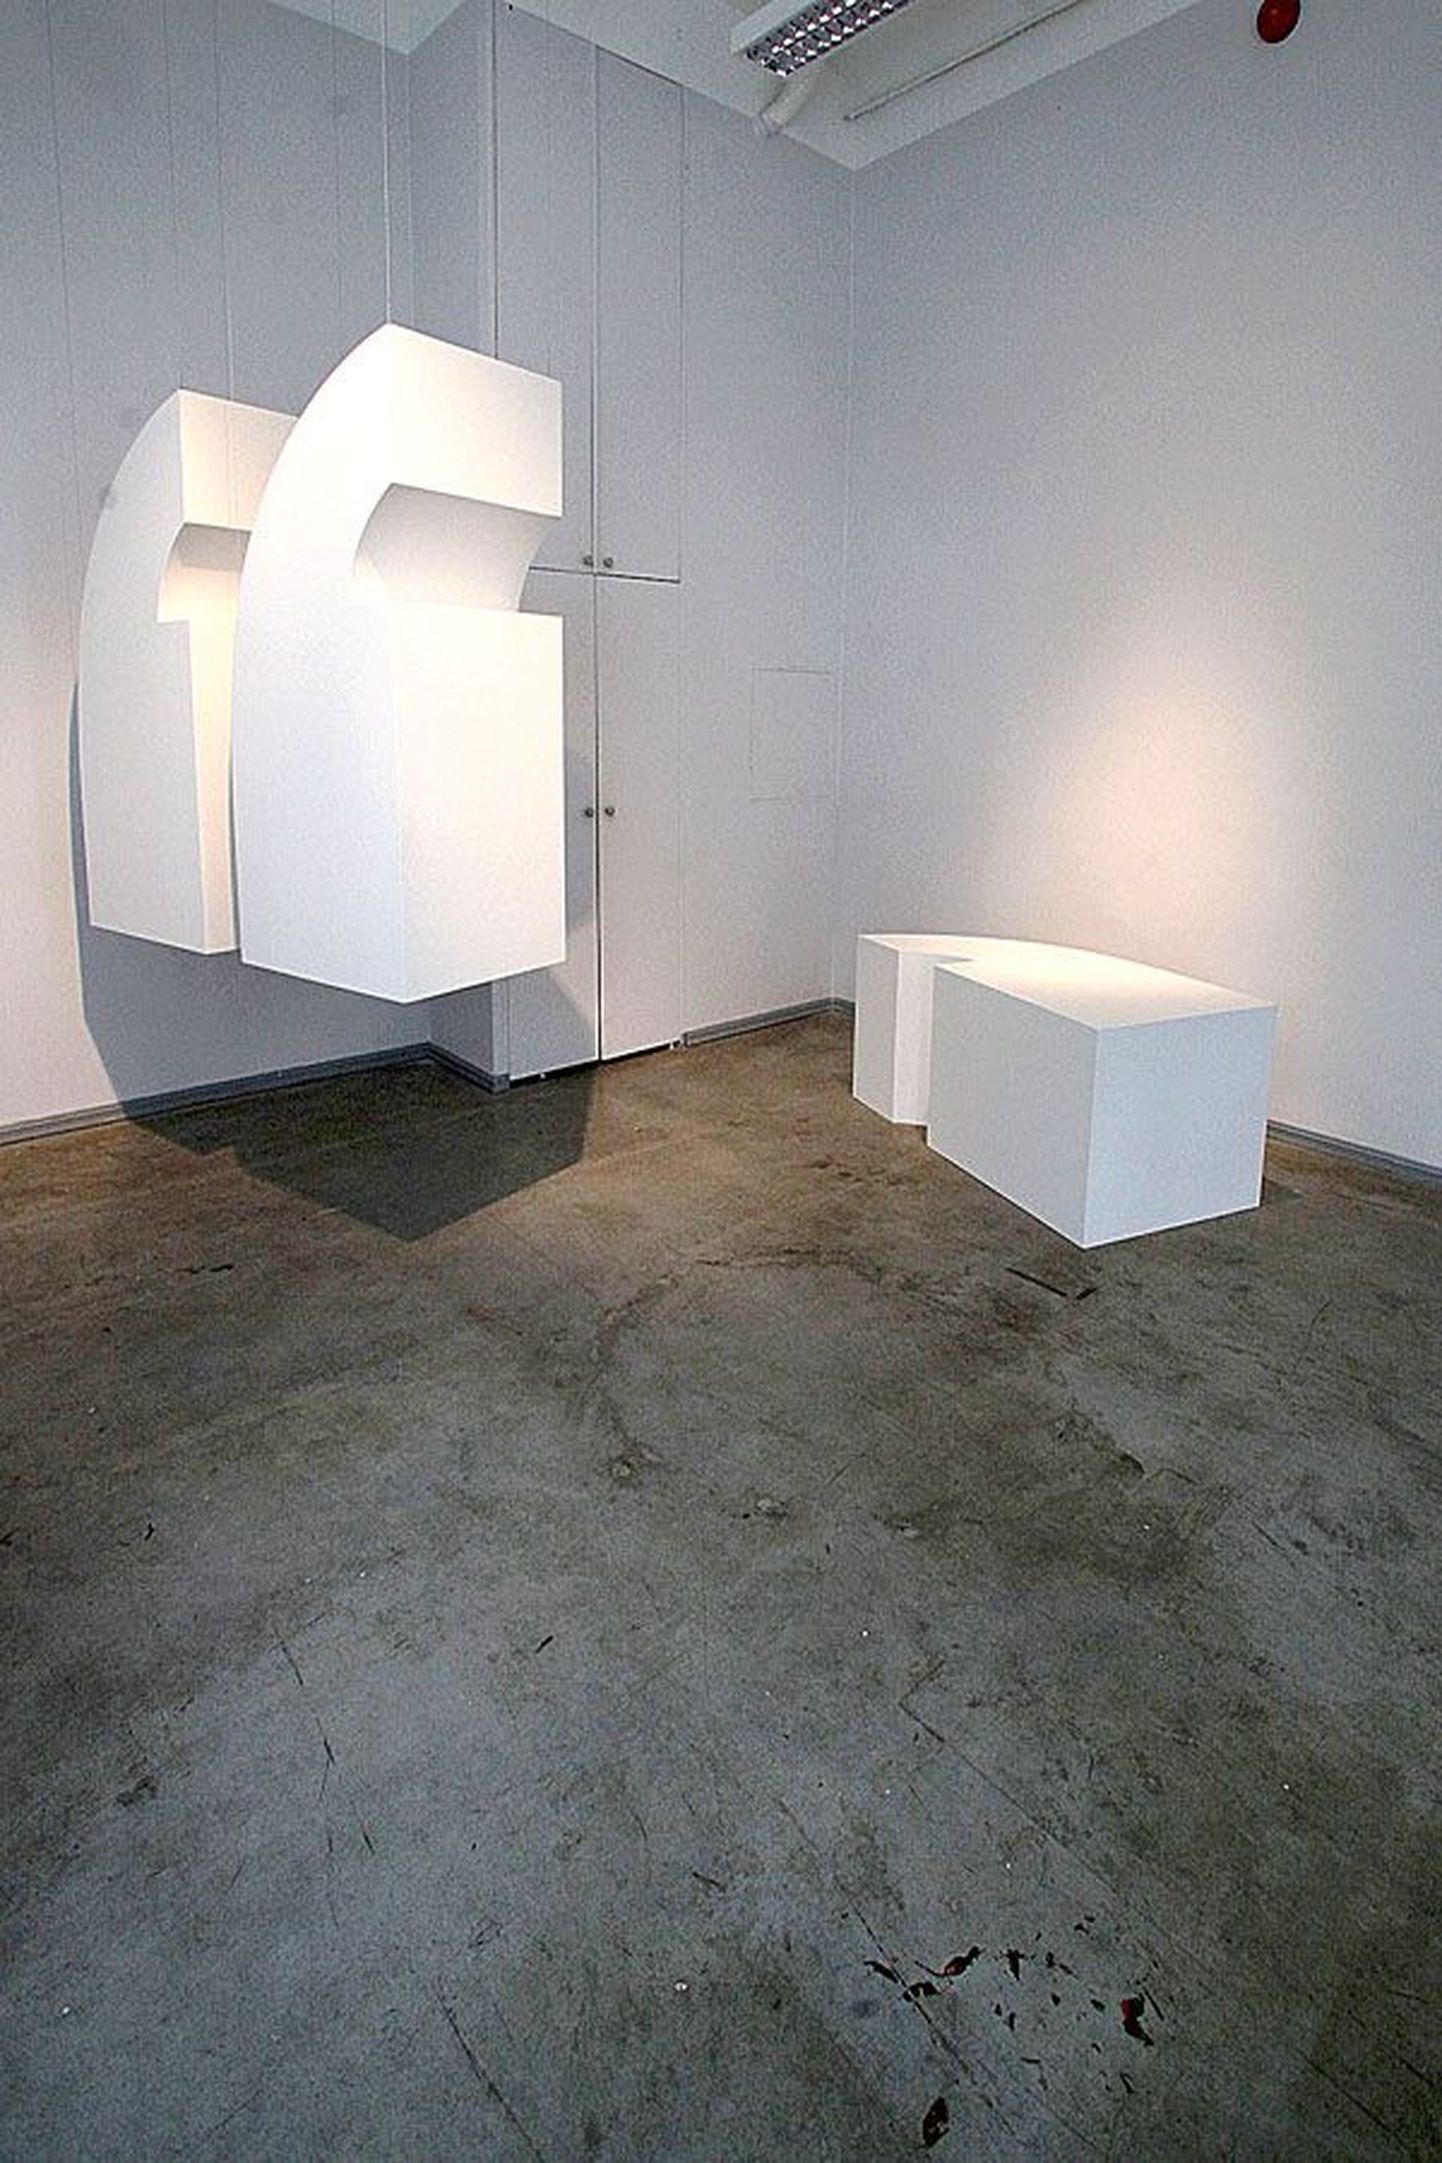 Pildil on osa teosest, Taavi Talve näitusel monumentaalgaleriis on valges kuubis valgeid kuubikuid rohkem.